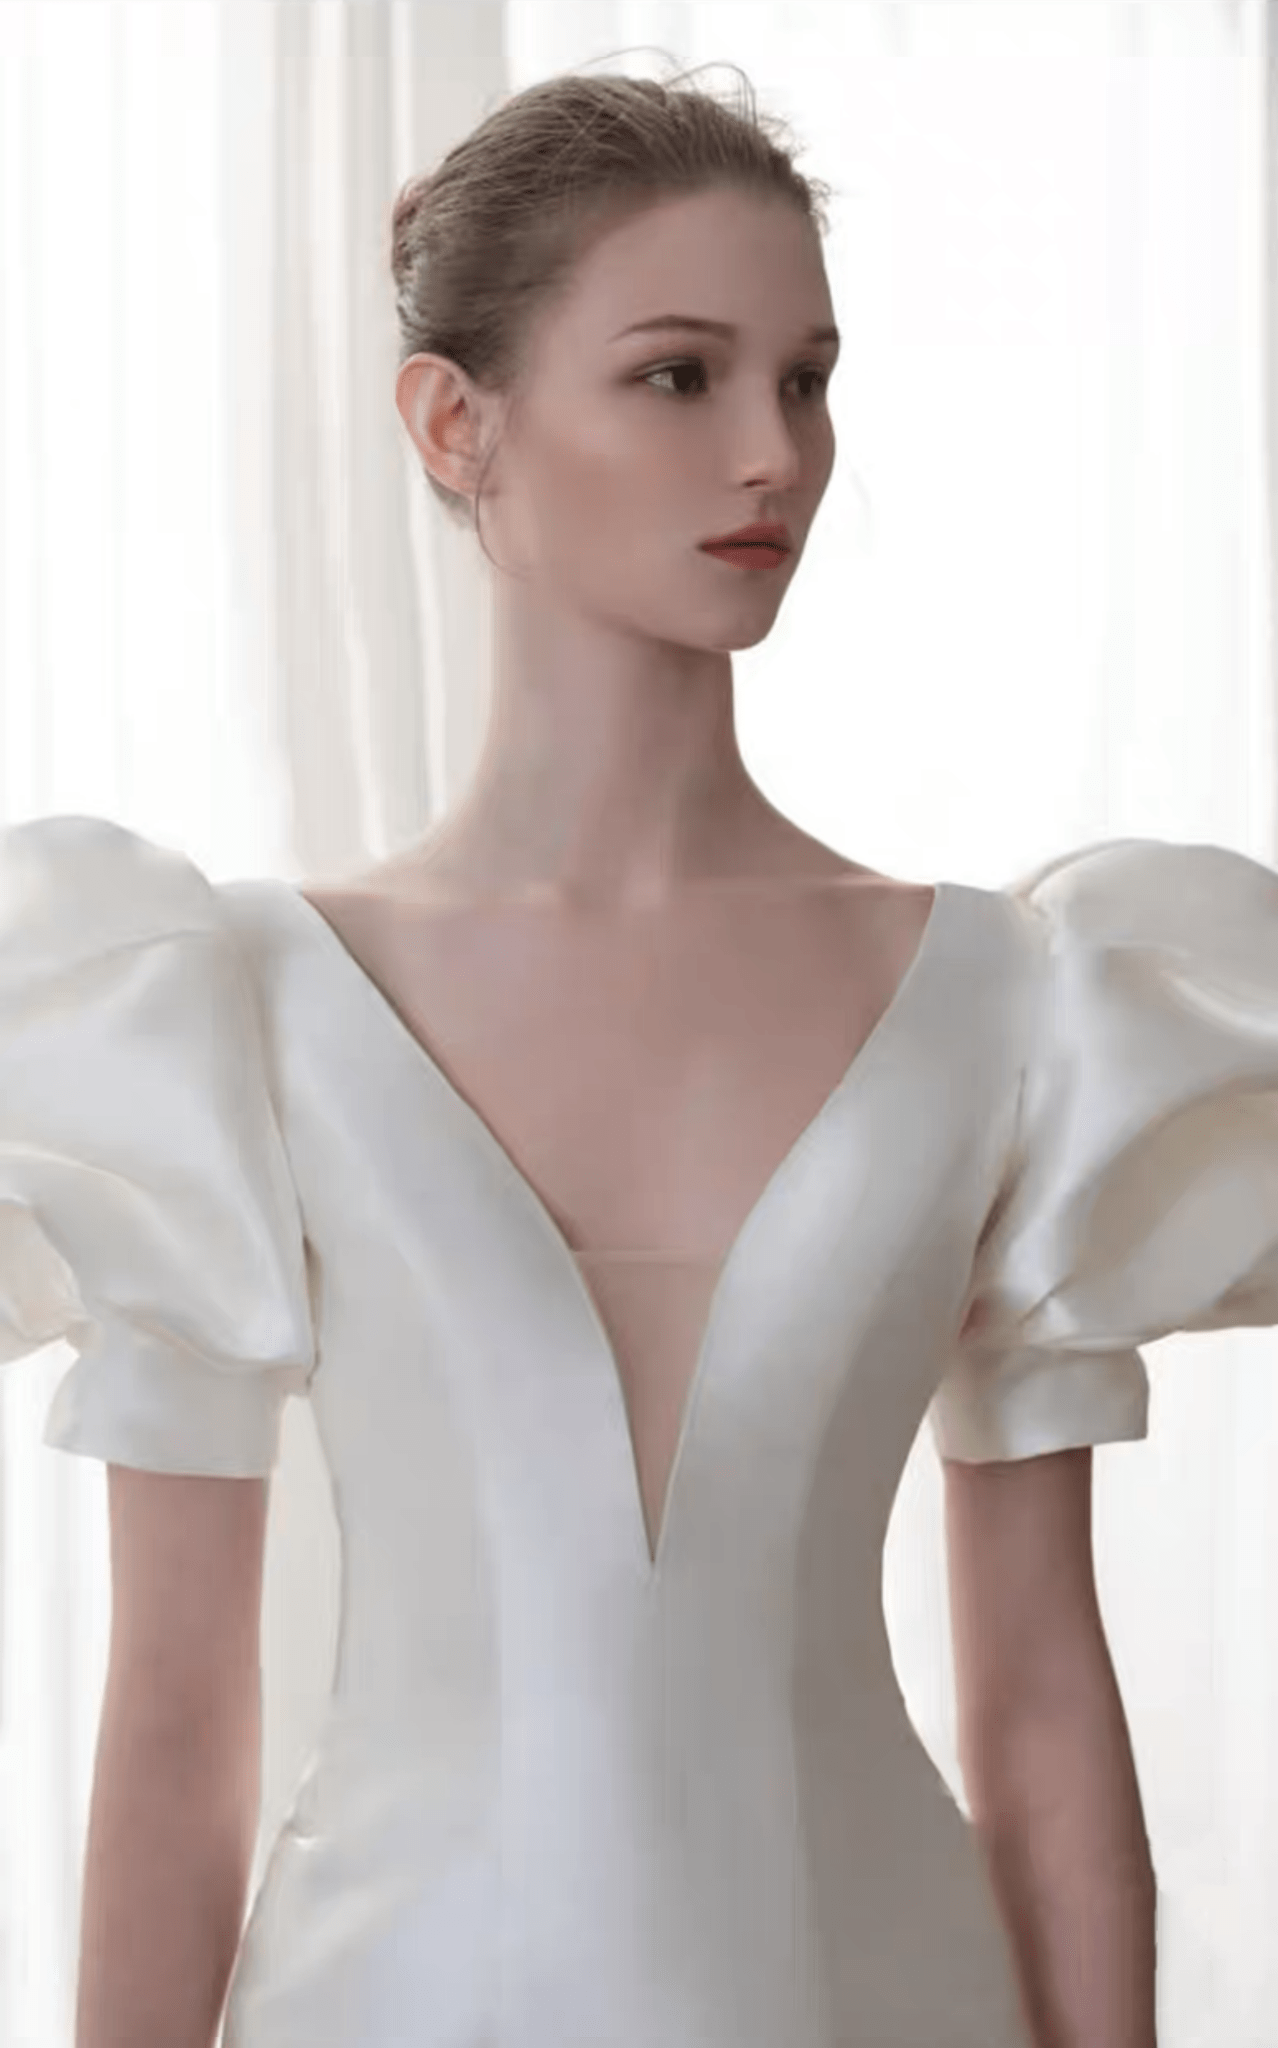 Vintage Classic V-Neck Bubble Sleeve Light Ivory Mermaid Beading Illusion Back Wedding Dress Plus Size - WonderlandByLilian